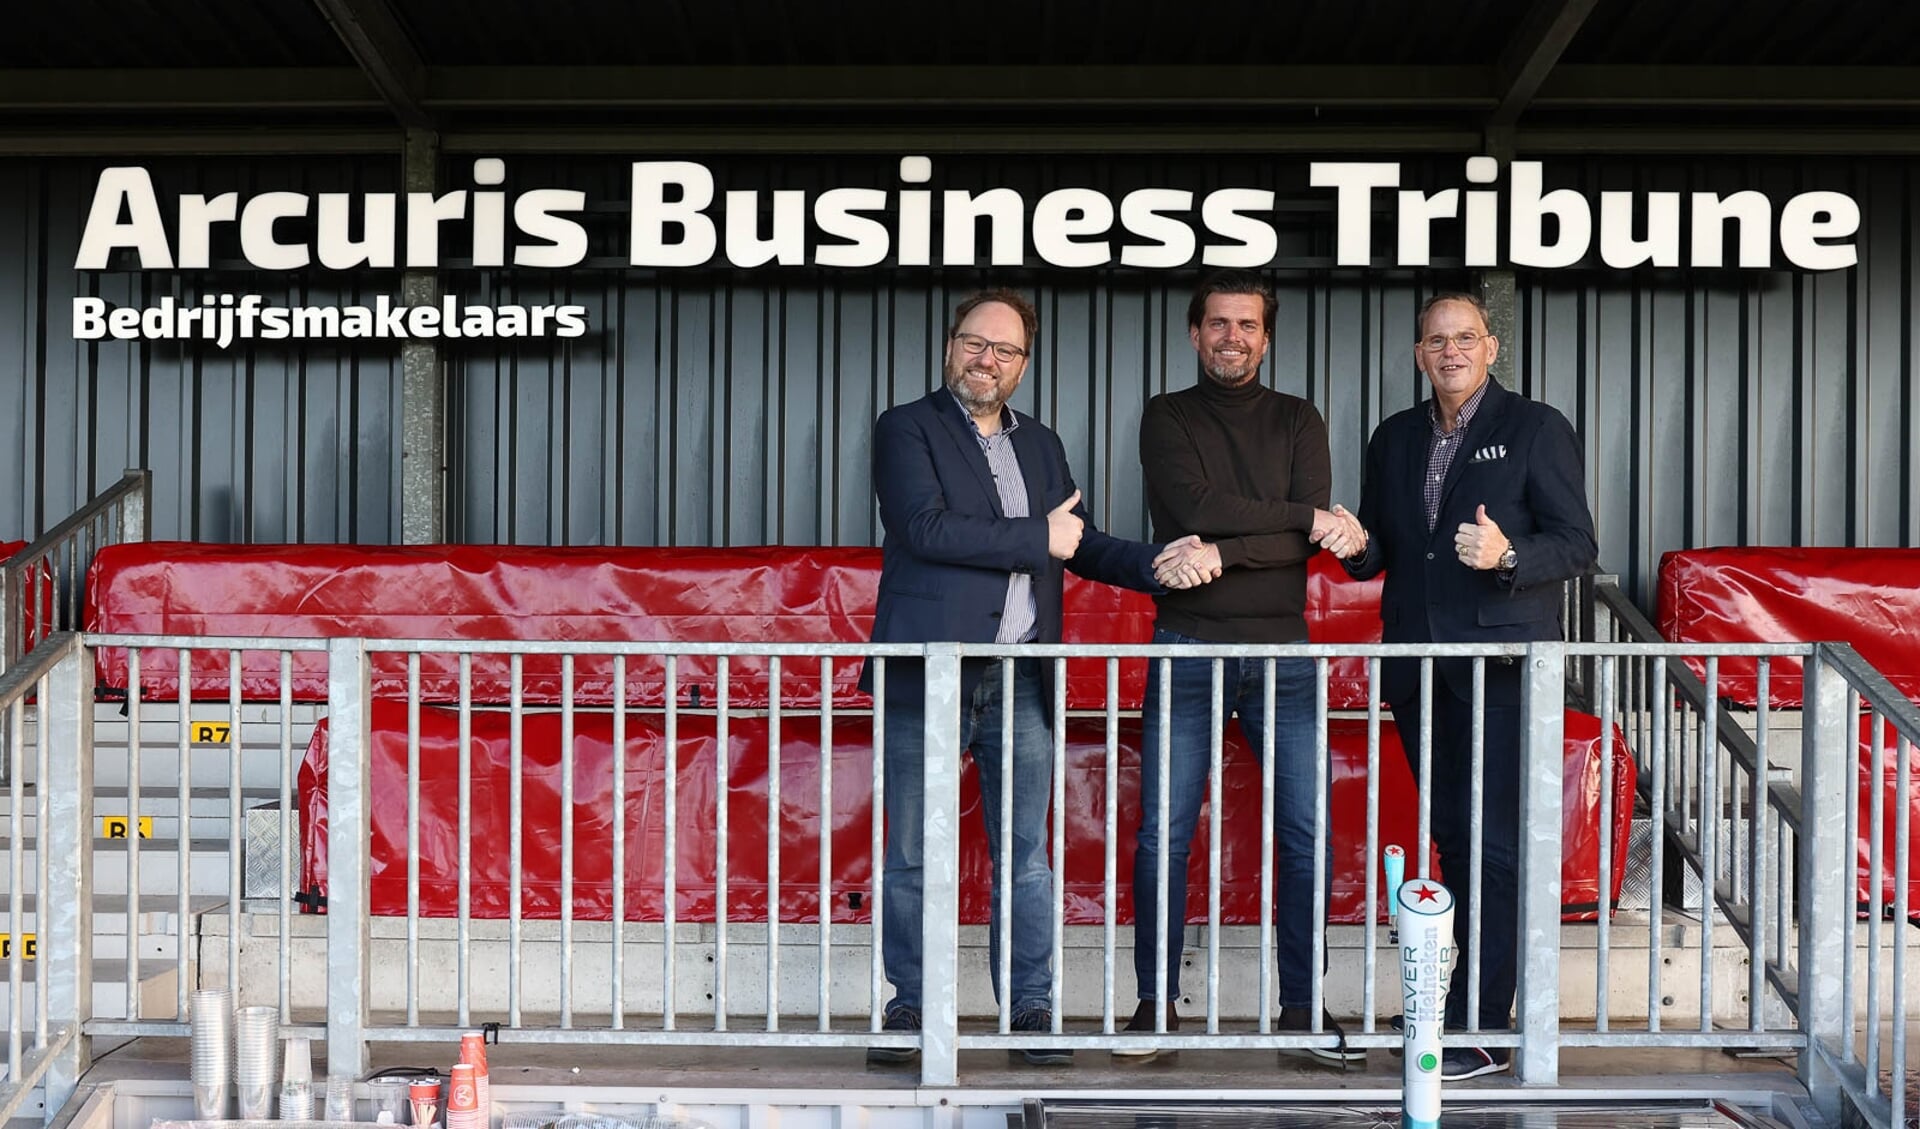 Arcuris Bedrijfsmakelaars naamgever nieuwe businesstribune Almere City FC